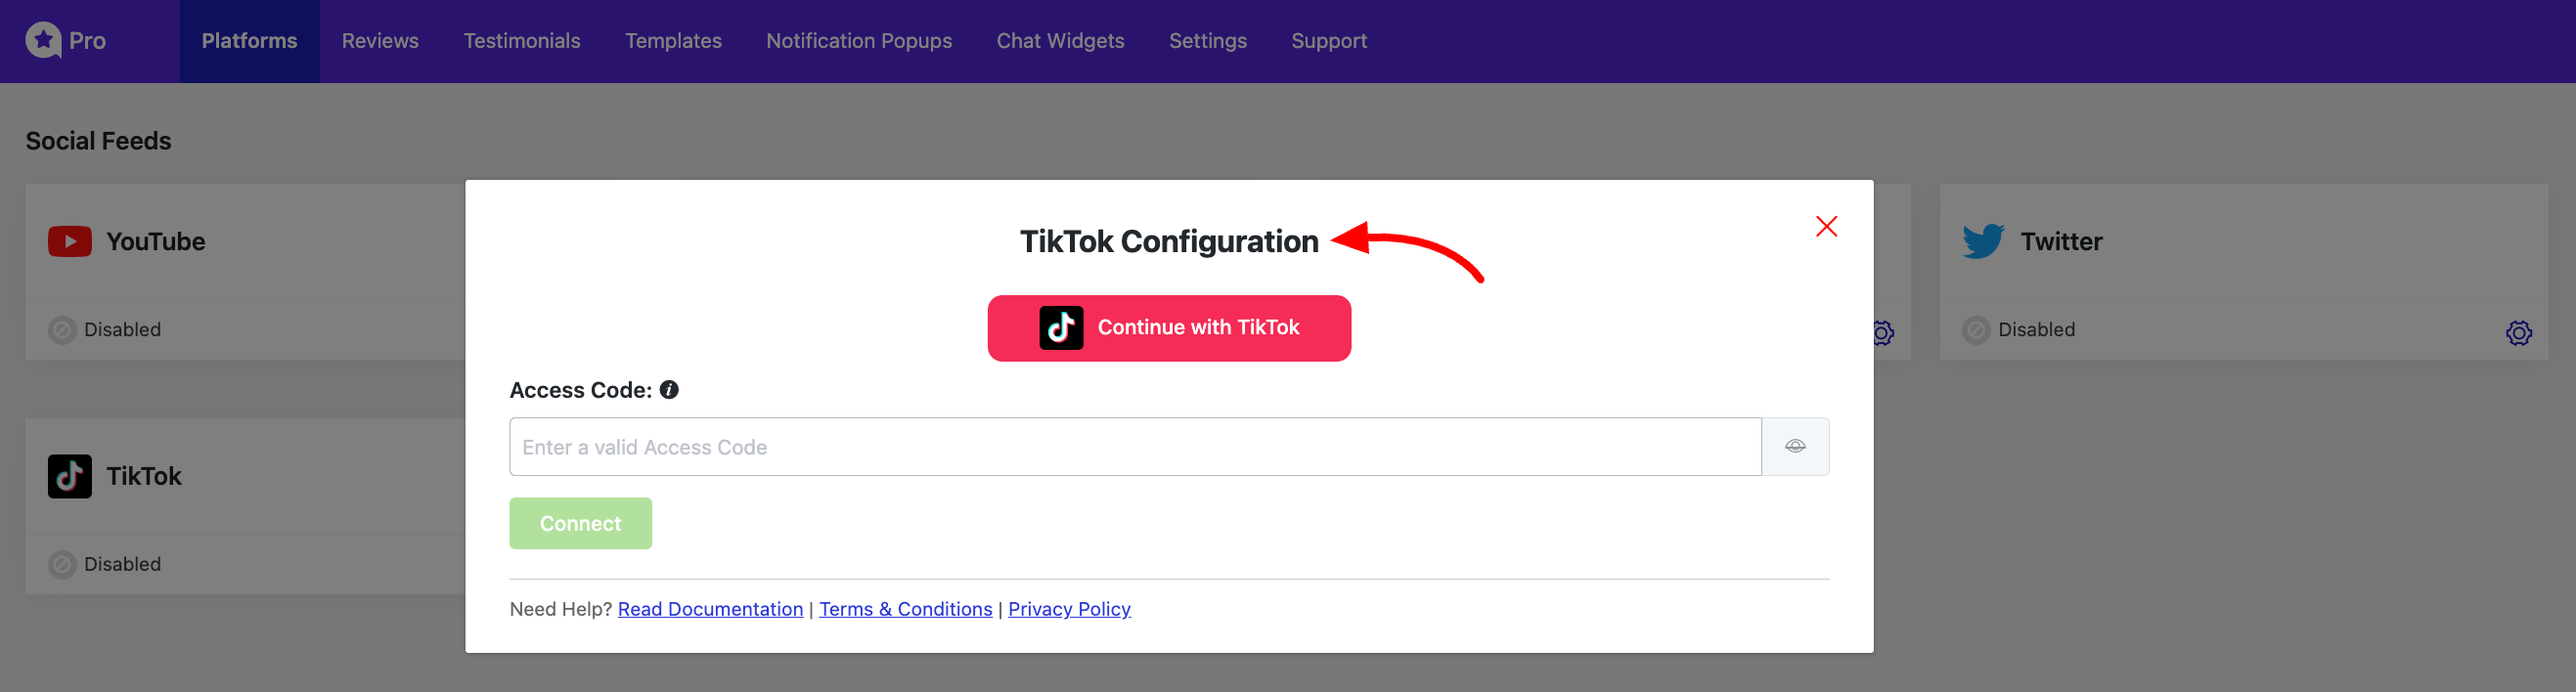 TikTok Configuration